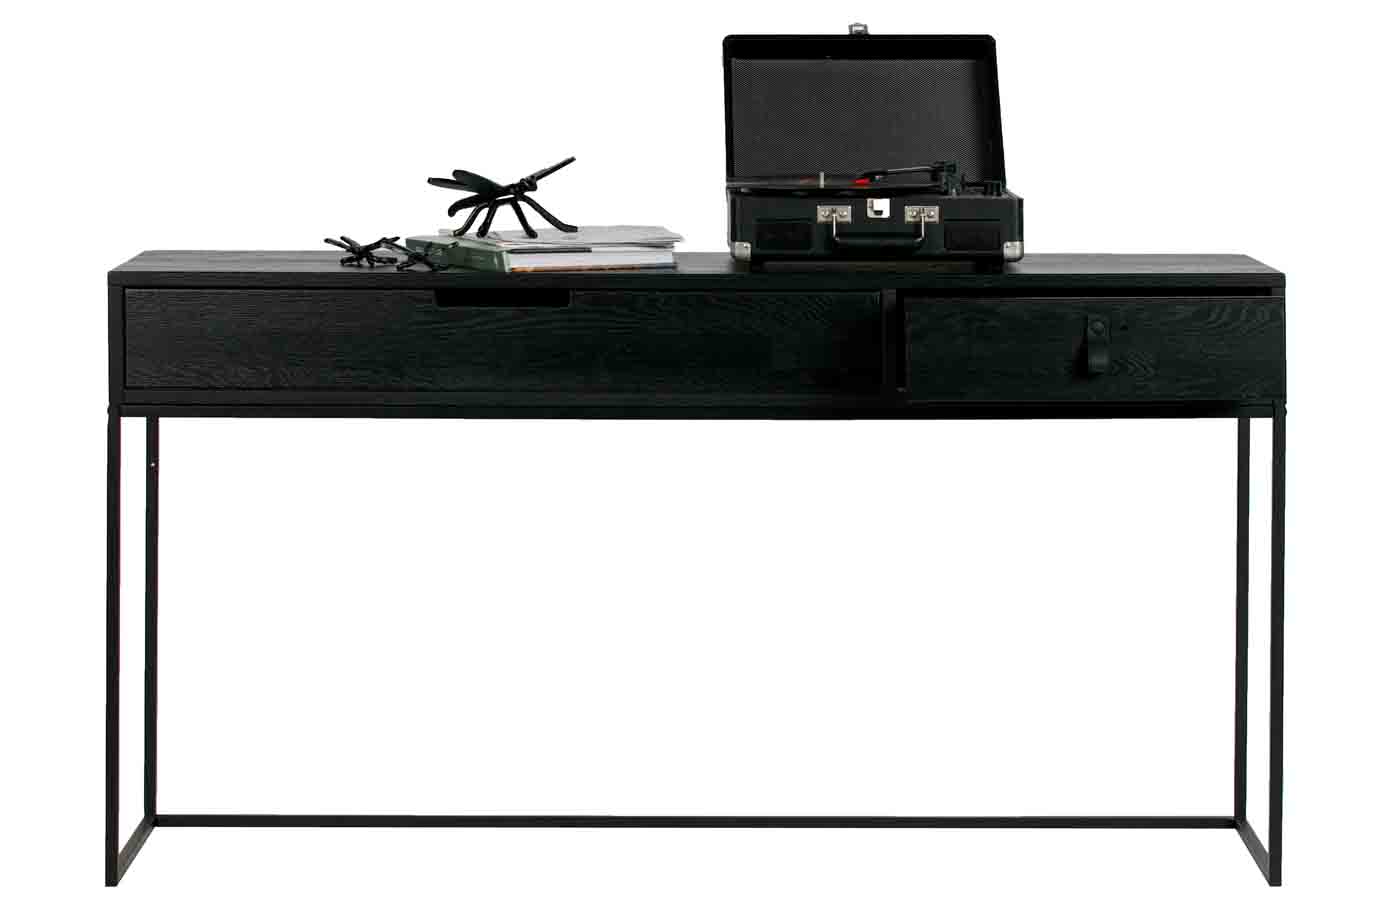 Konsole und Schreibtisch in einem, die Silas Konsole aus Eichenholz wurde schwarz lackiert und bietet mit den Schubladen noch weiteren Stauraum